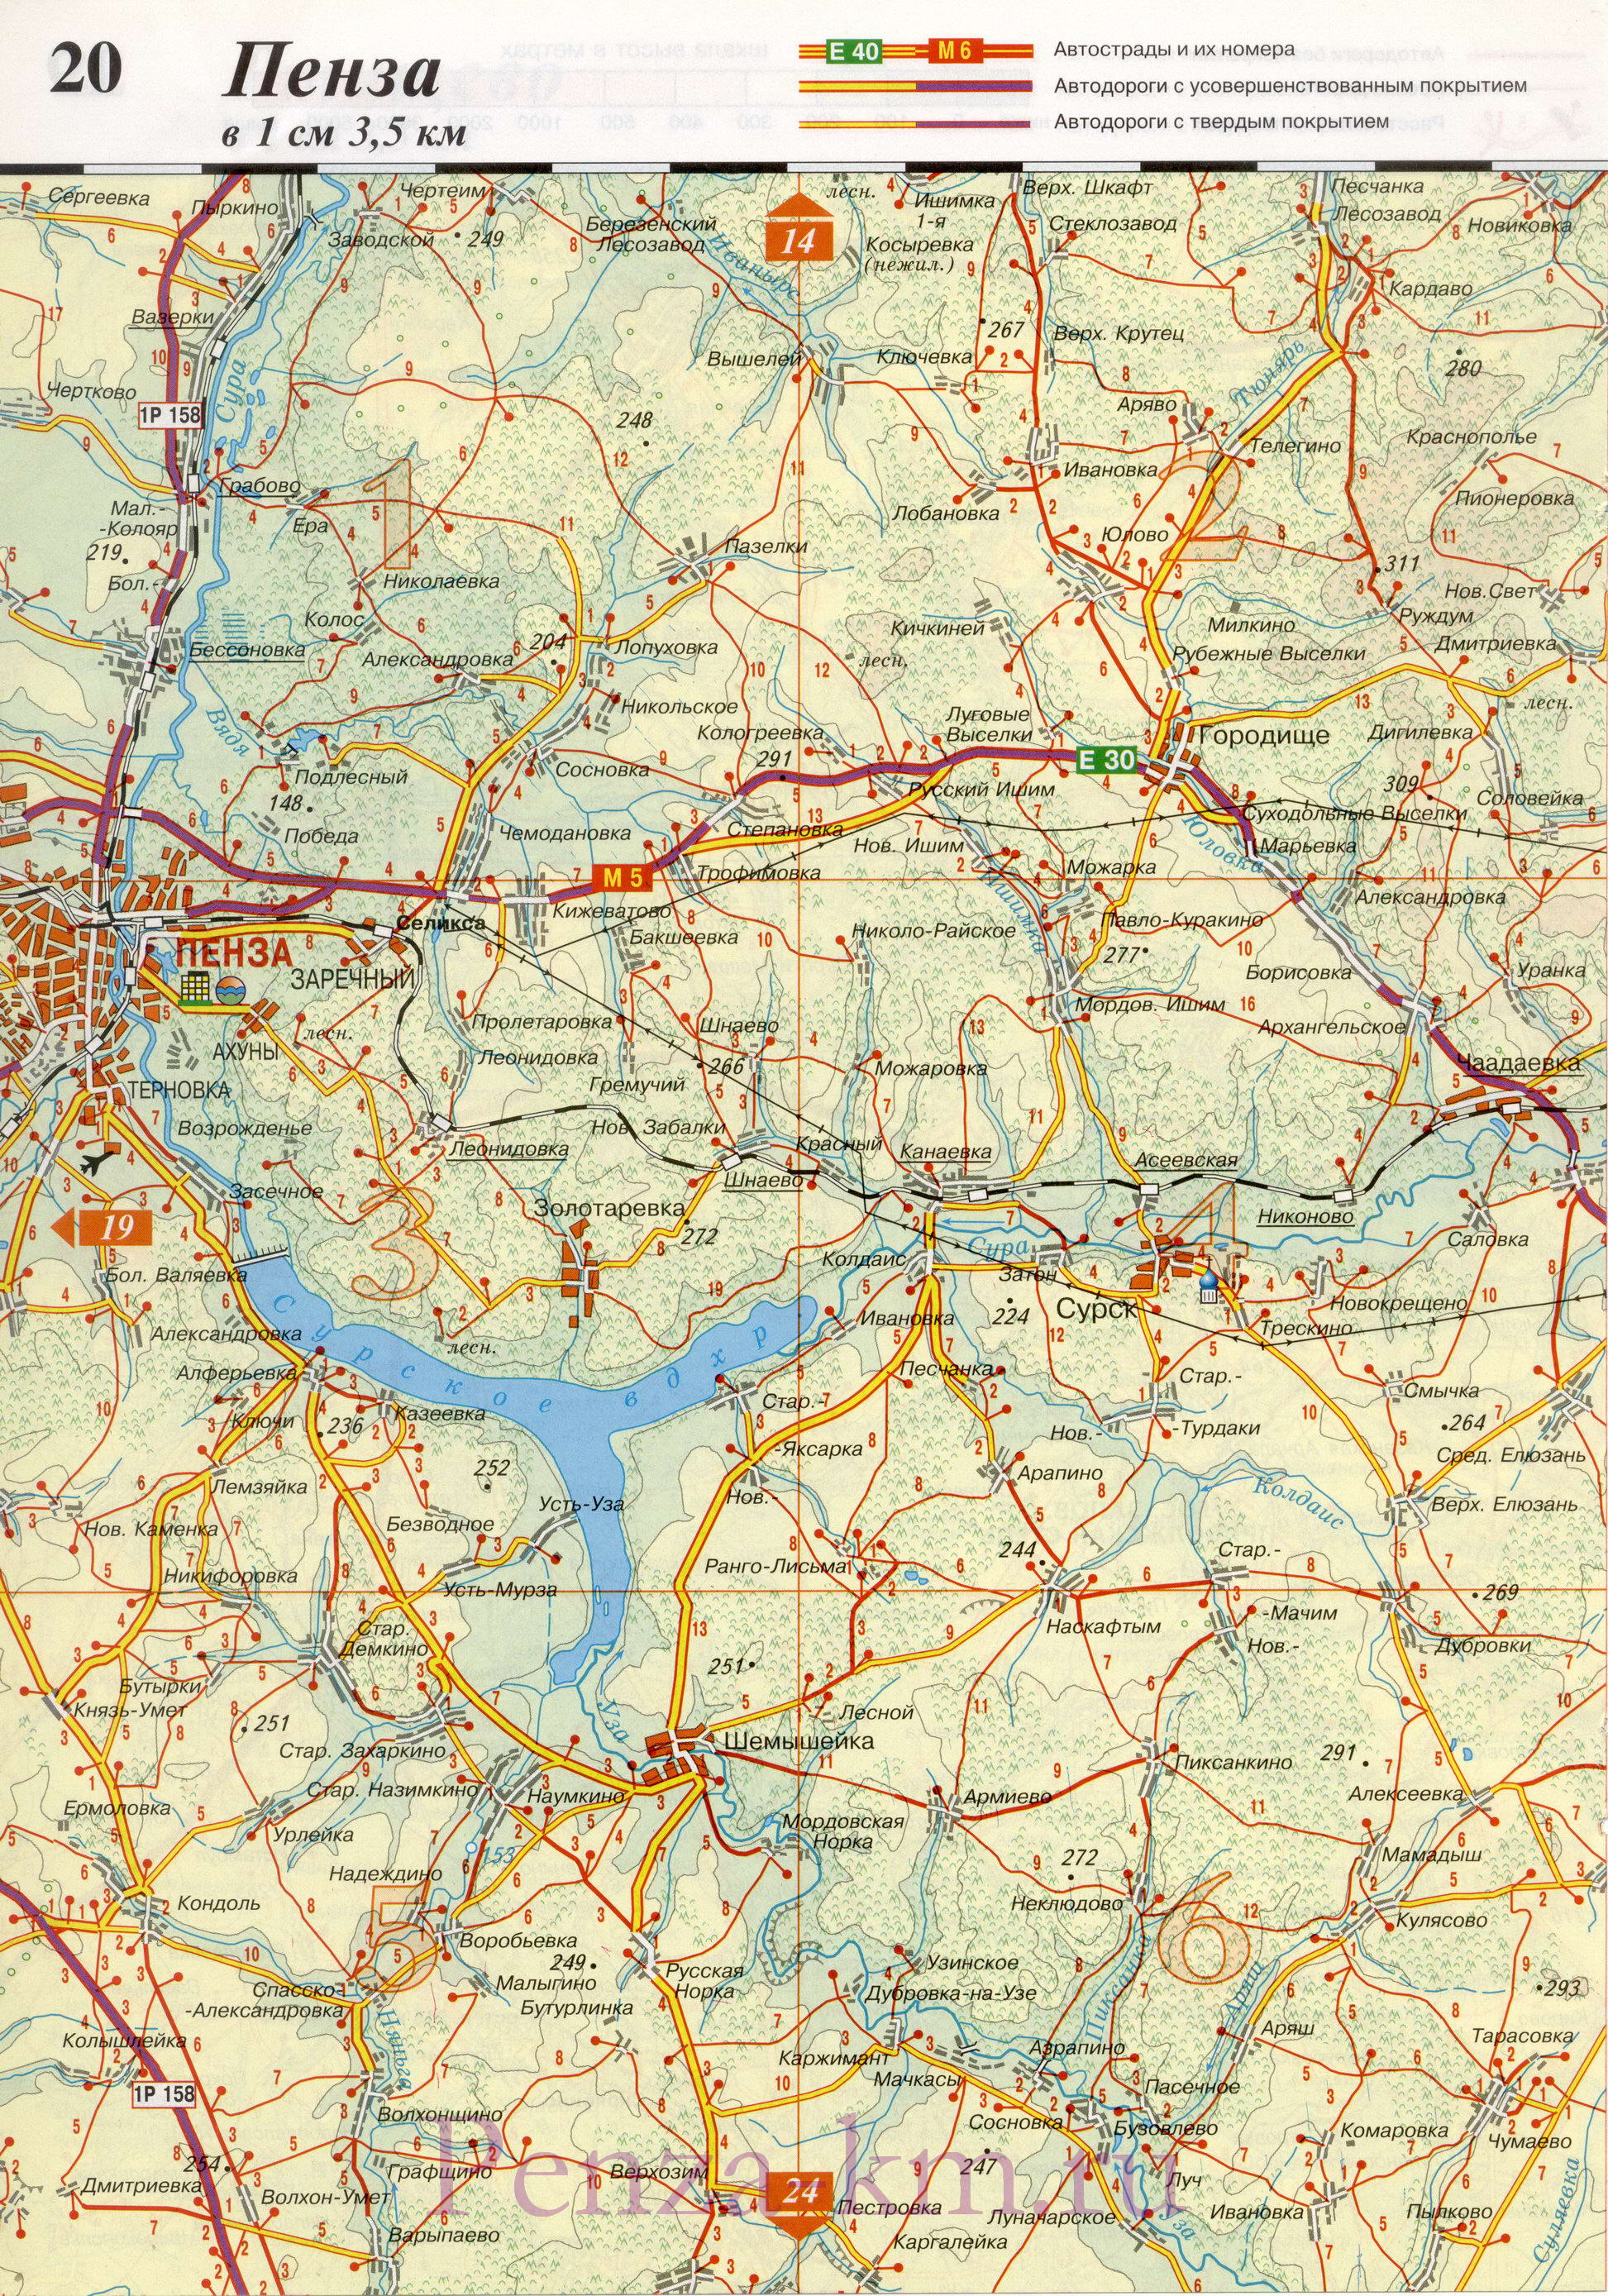  Пенза на карте России. Карта дорог Пензы и окрестностей (название города Пенза по реке Пенза), B0 - 